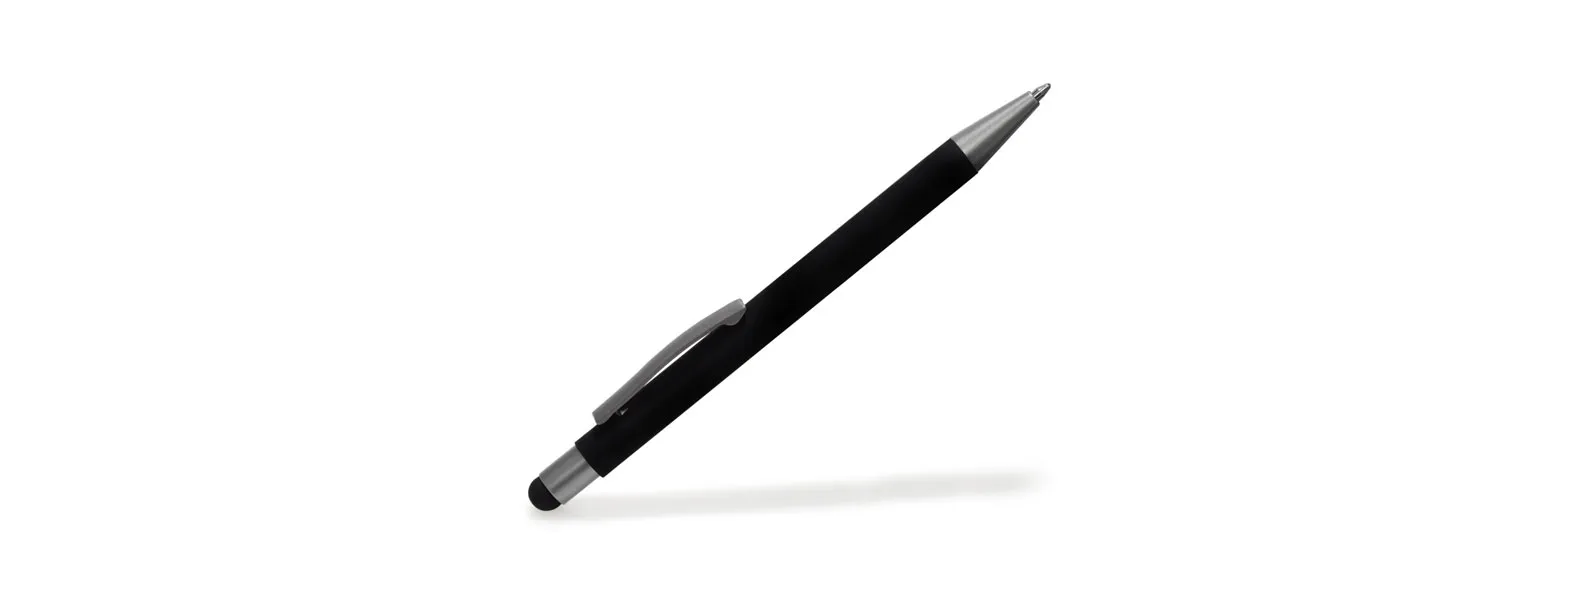 Caneta esferográfica em alumínio preto. Conta com acabamento fosco, clipe e ponteira touch em silicone preto. Carga esferográfica azul acionada por um click na extremidade da caneta.